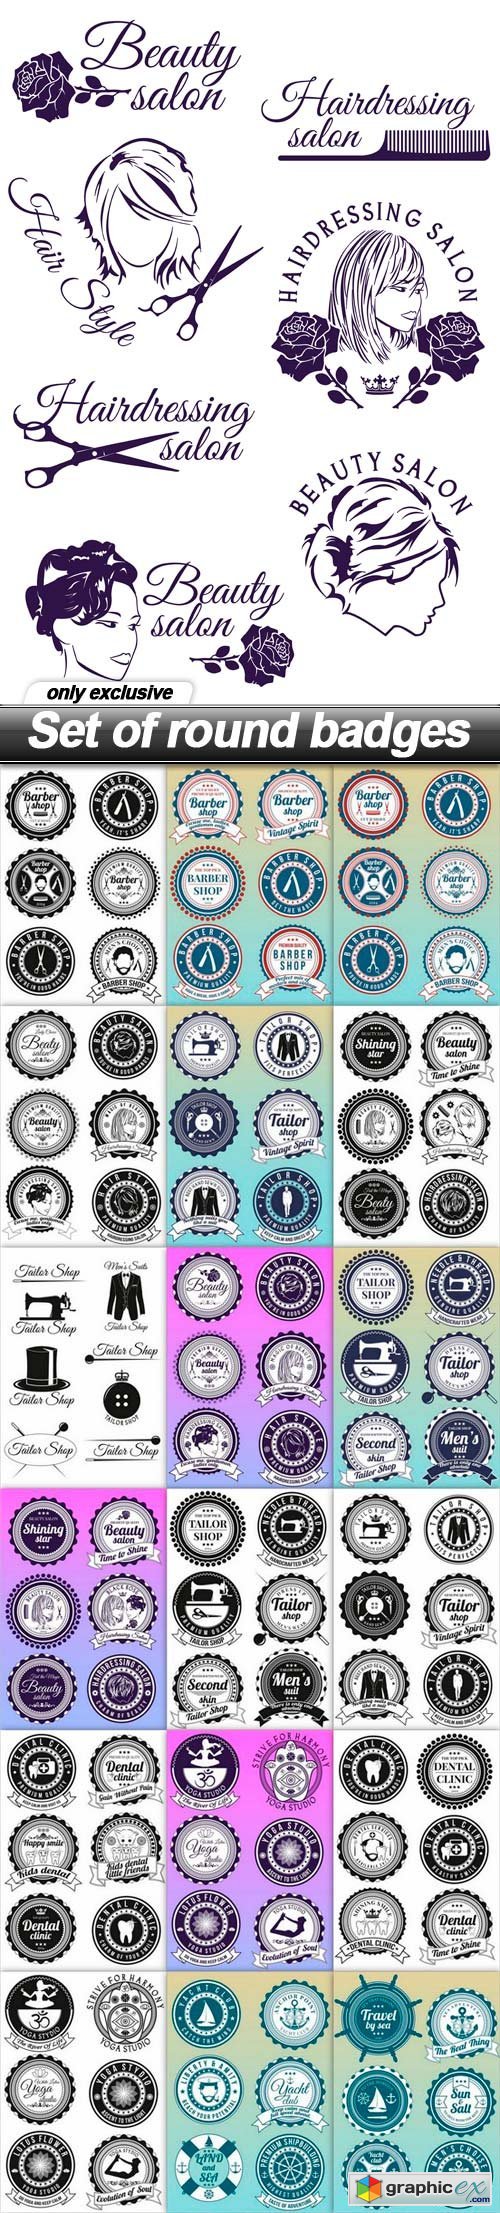 Set of round badges - 19 EPS